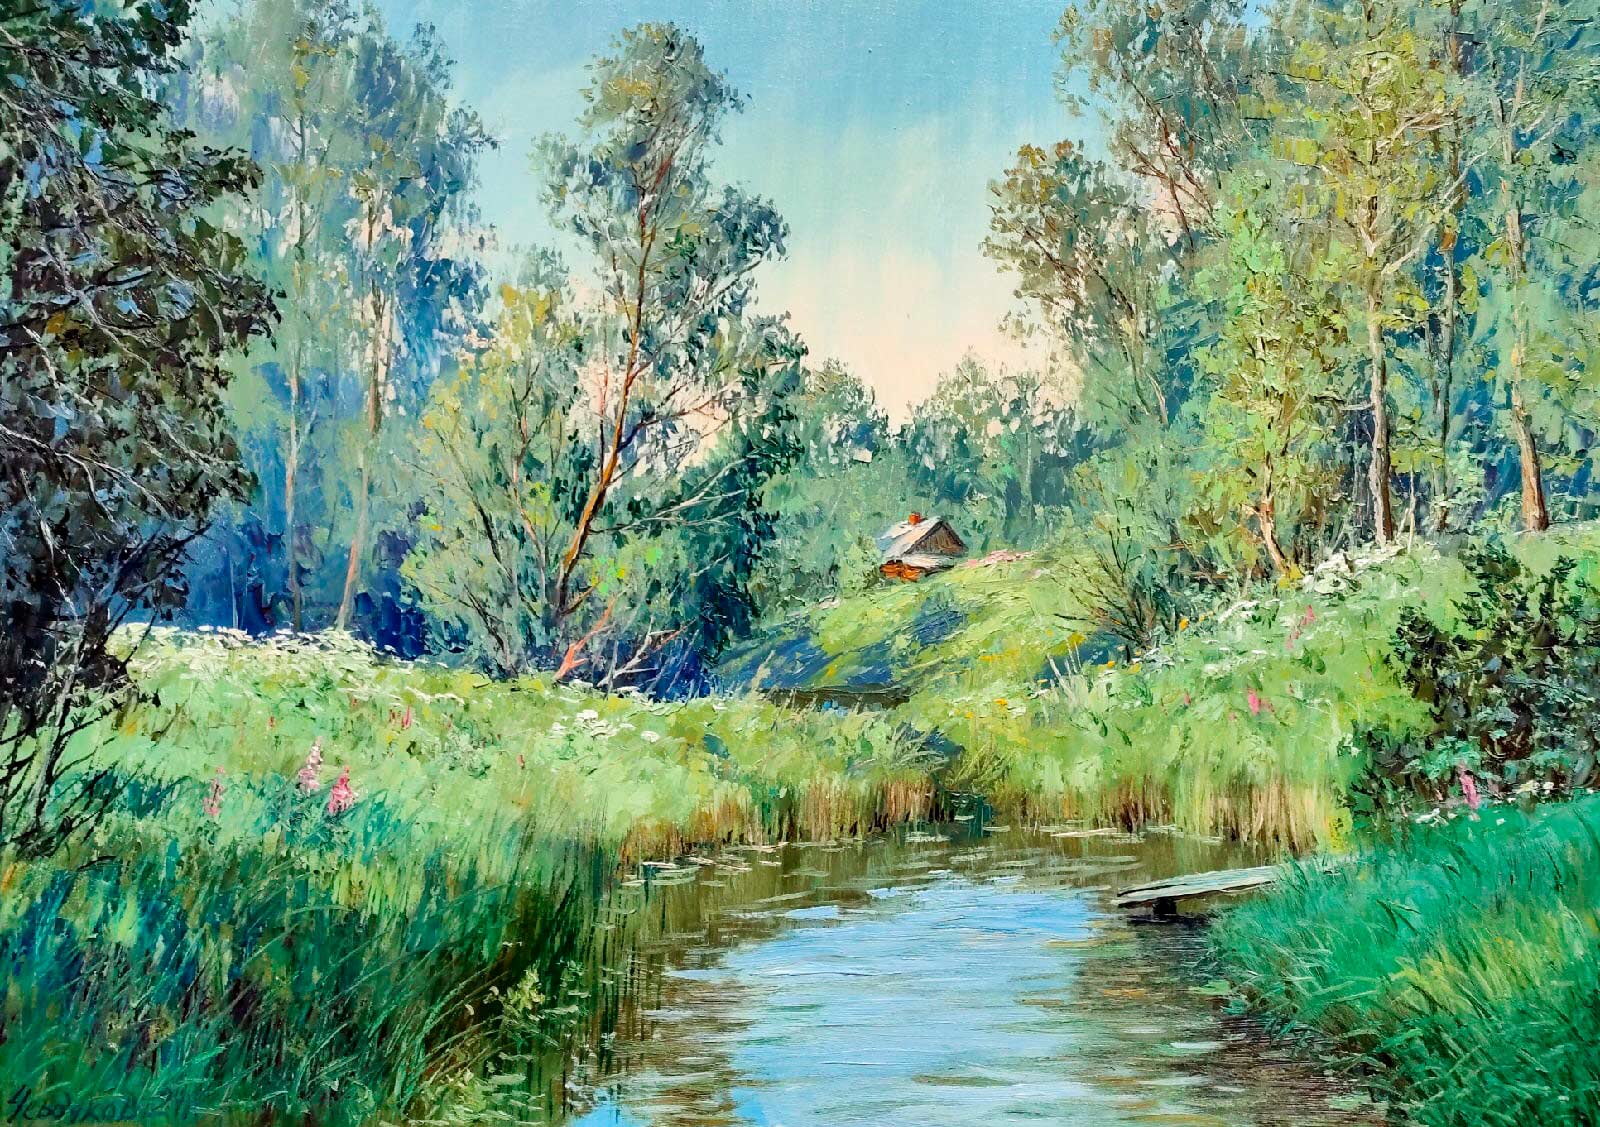 Stream - 1, Vyacheslav Cherdakov, Buy the painting Oil